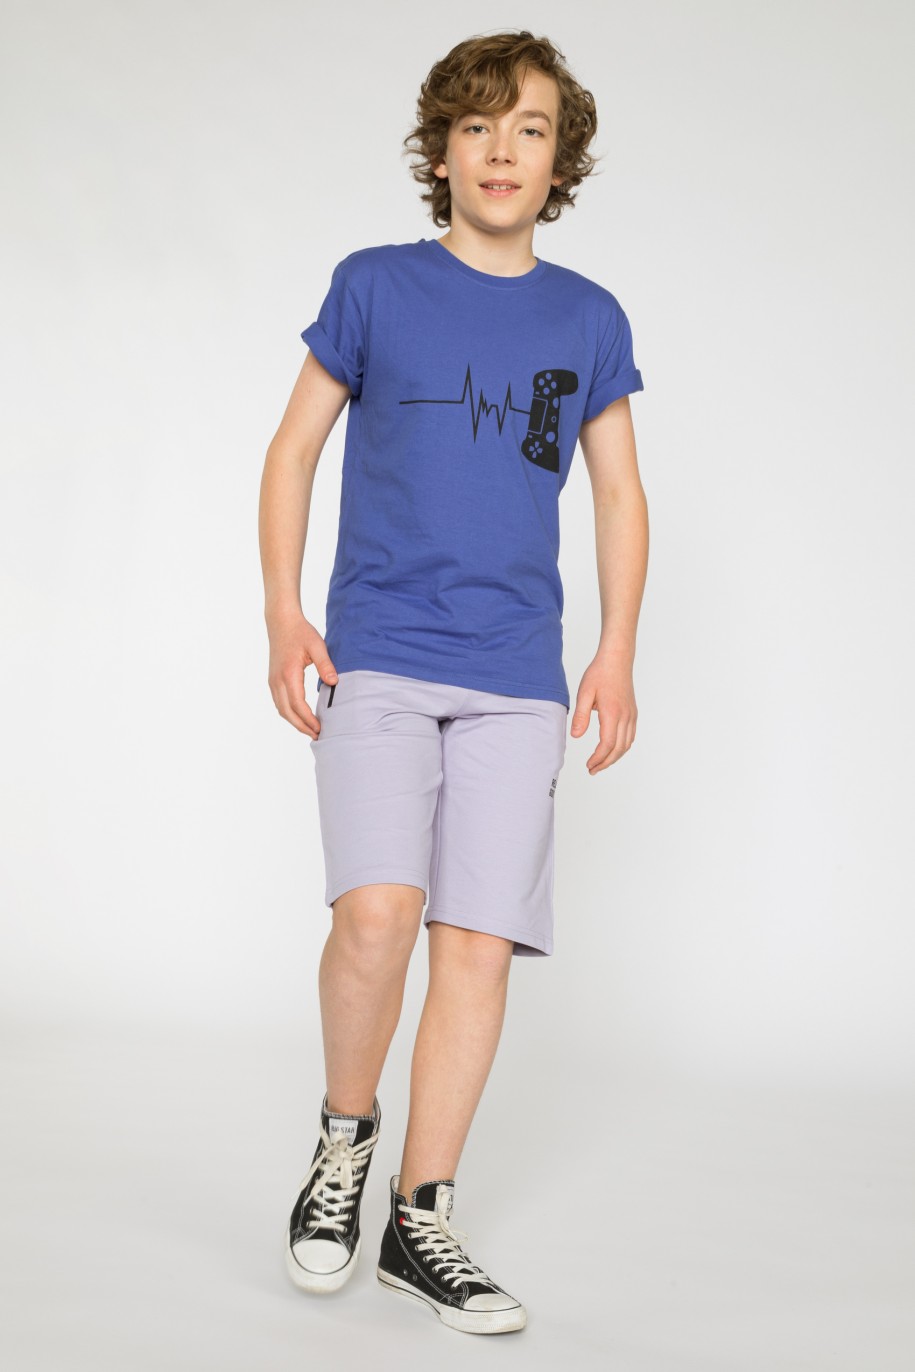 Niebieski t-shirt z nadrukiem dla chłopaka - 33906